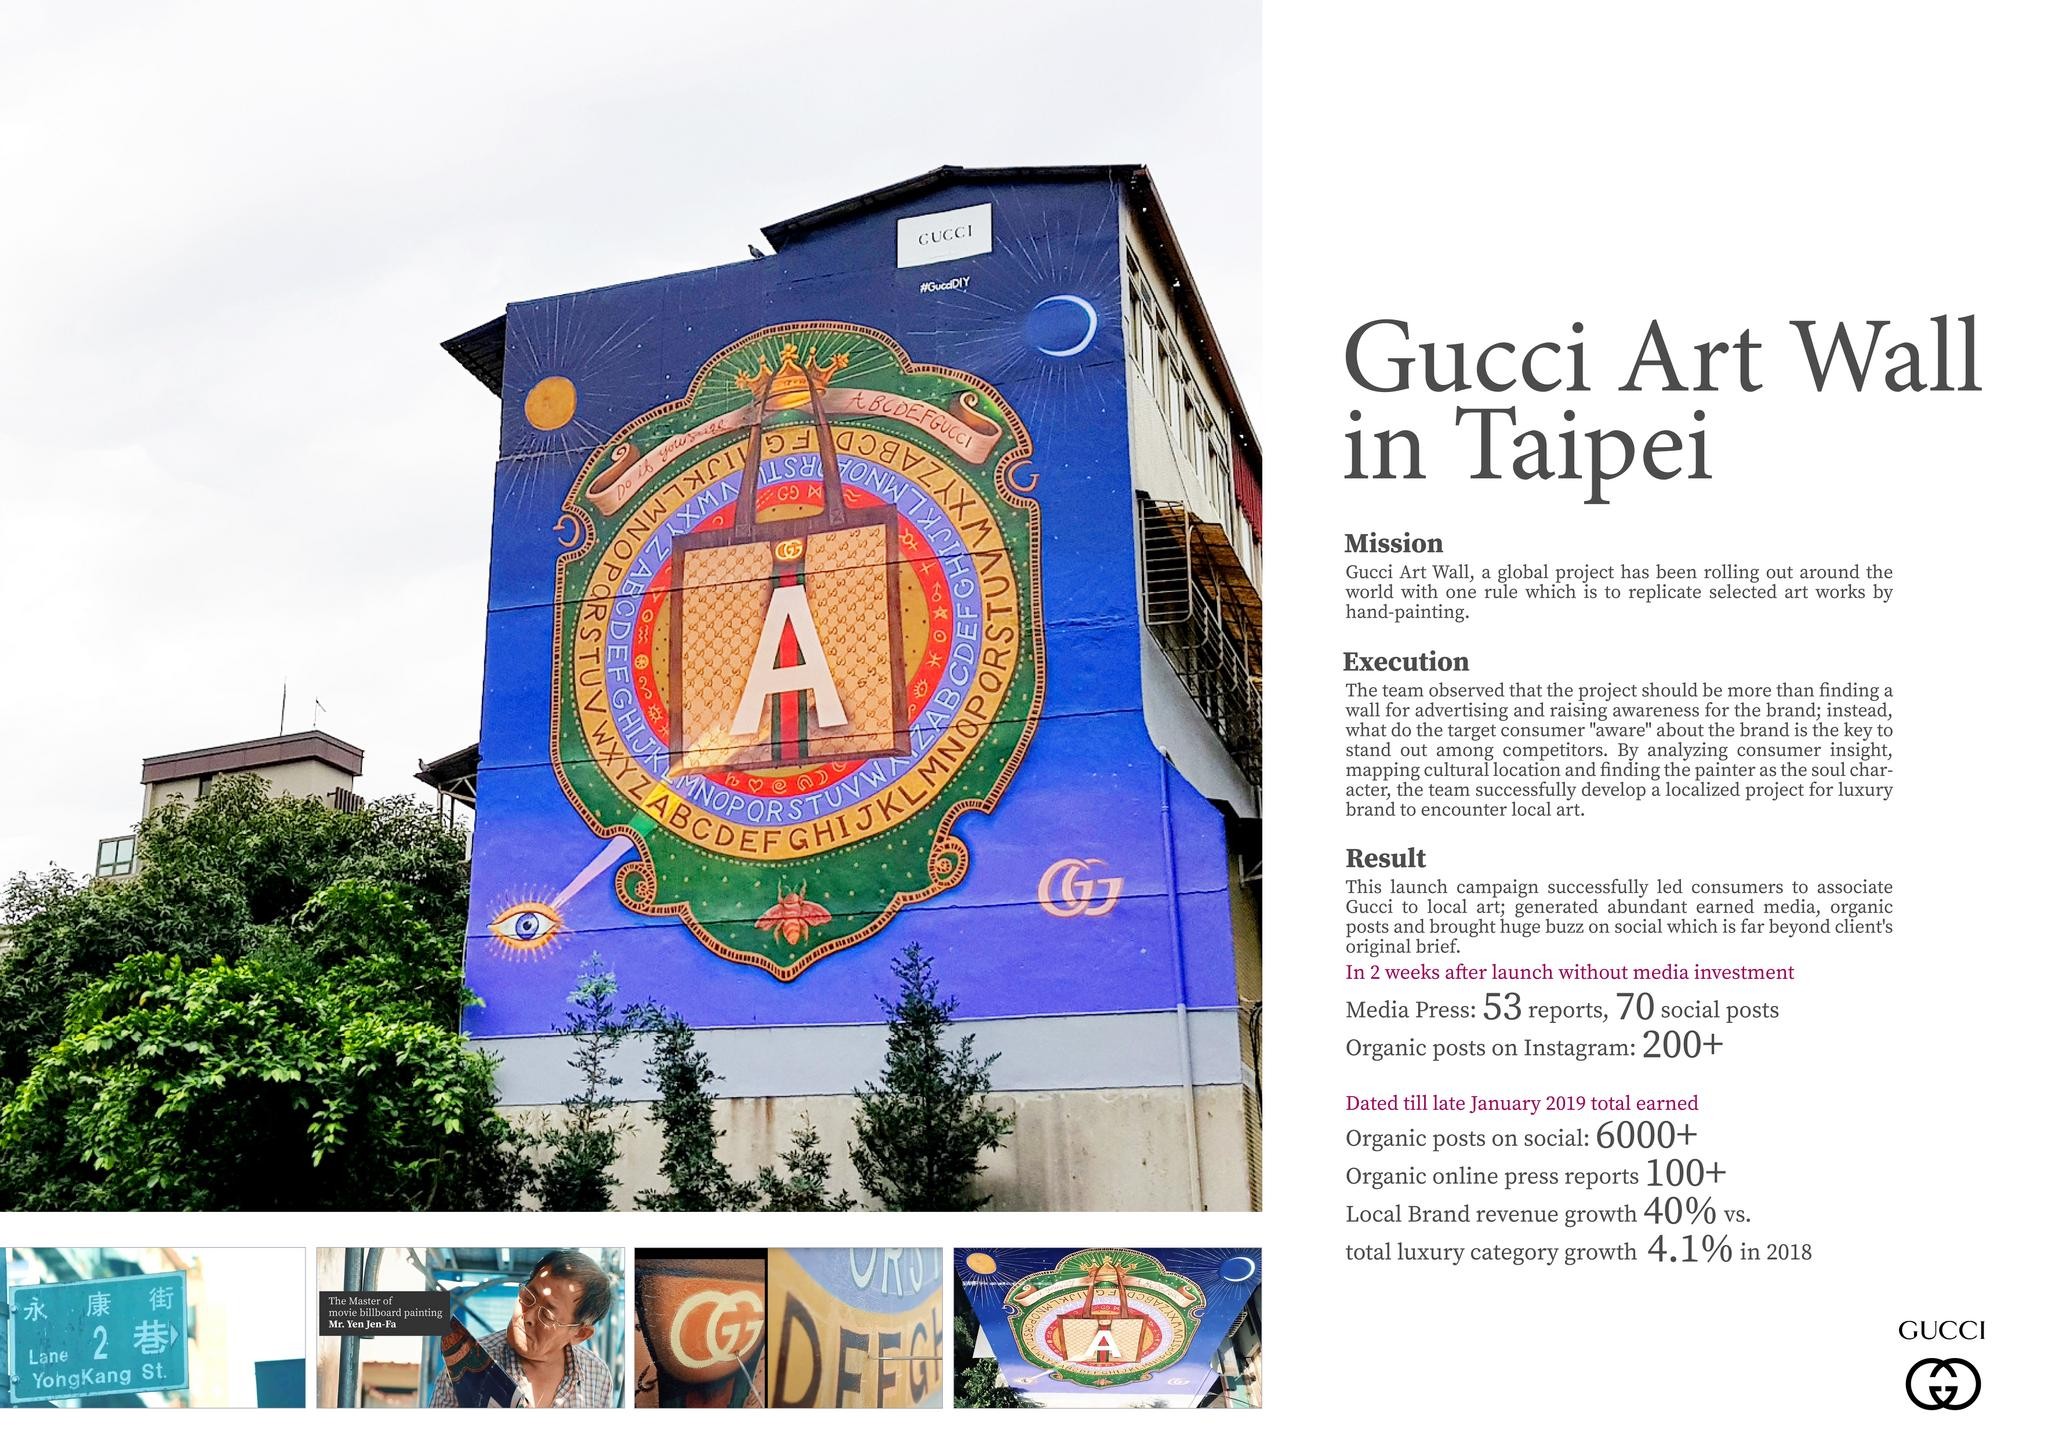 Gucci Art Wall in Taipei